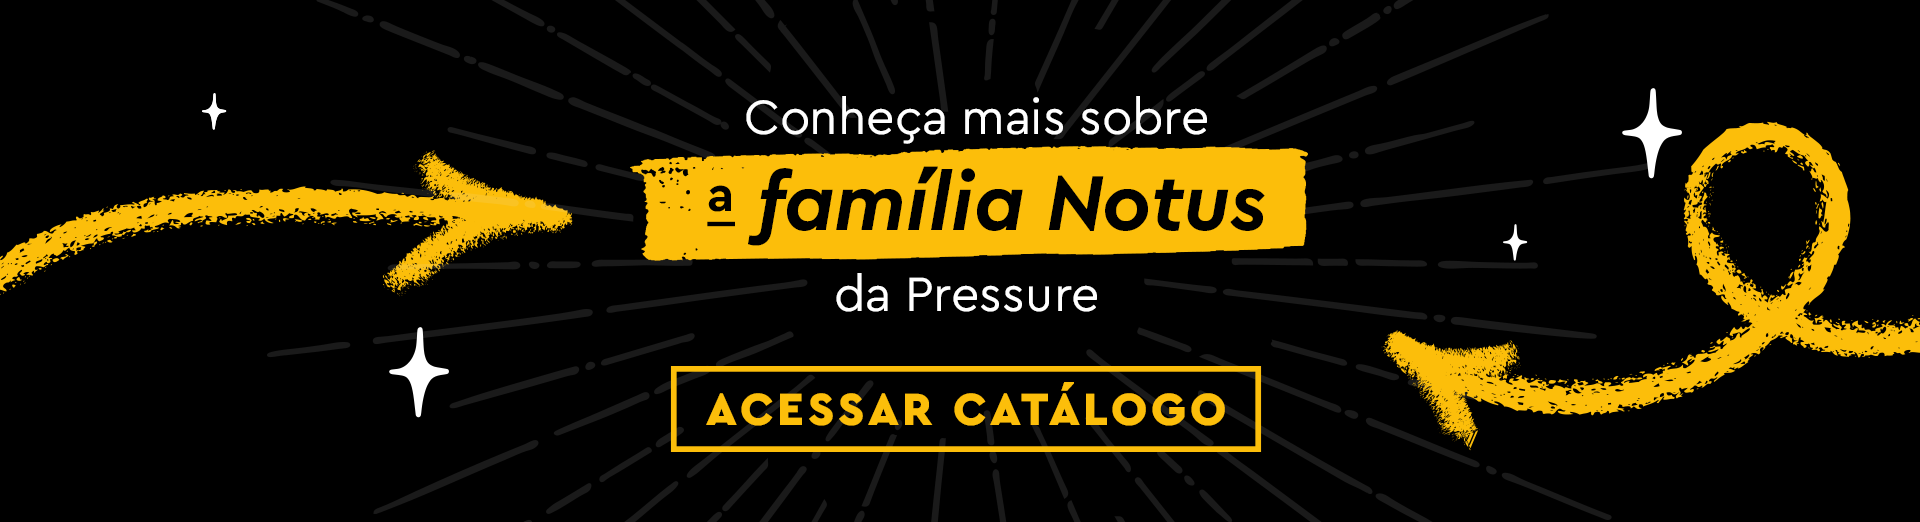 Conheça mais sobre a família de compressor vertical Notus da Pressure. Acesse nosso catálogo.